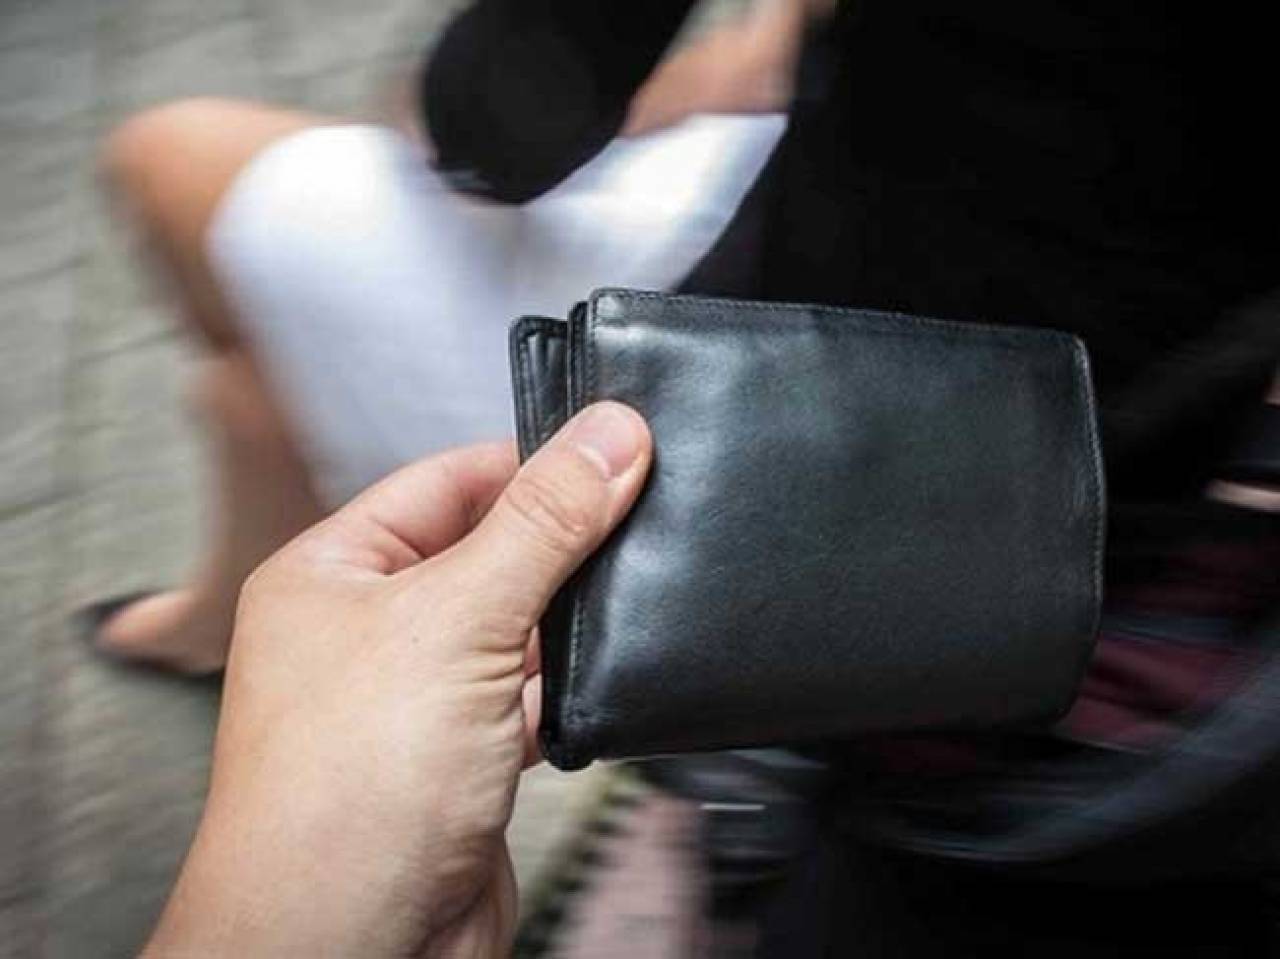 В Гродно одна пенсионерка обворовала другую прямо в магазине: вернула уже пустой кошелек, потерянный несколикими минутами ранее